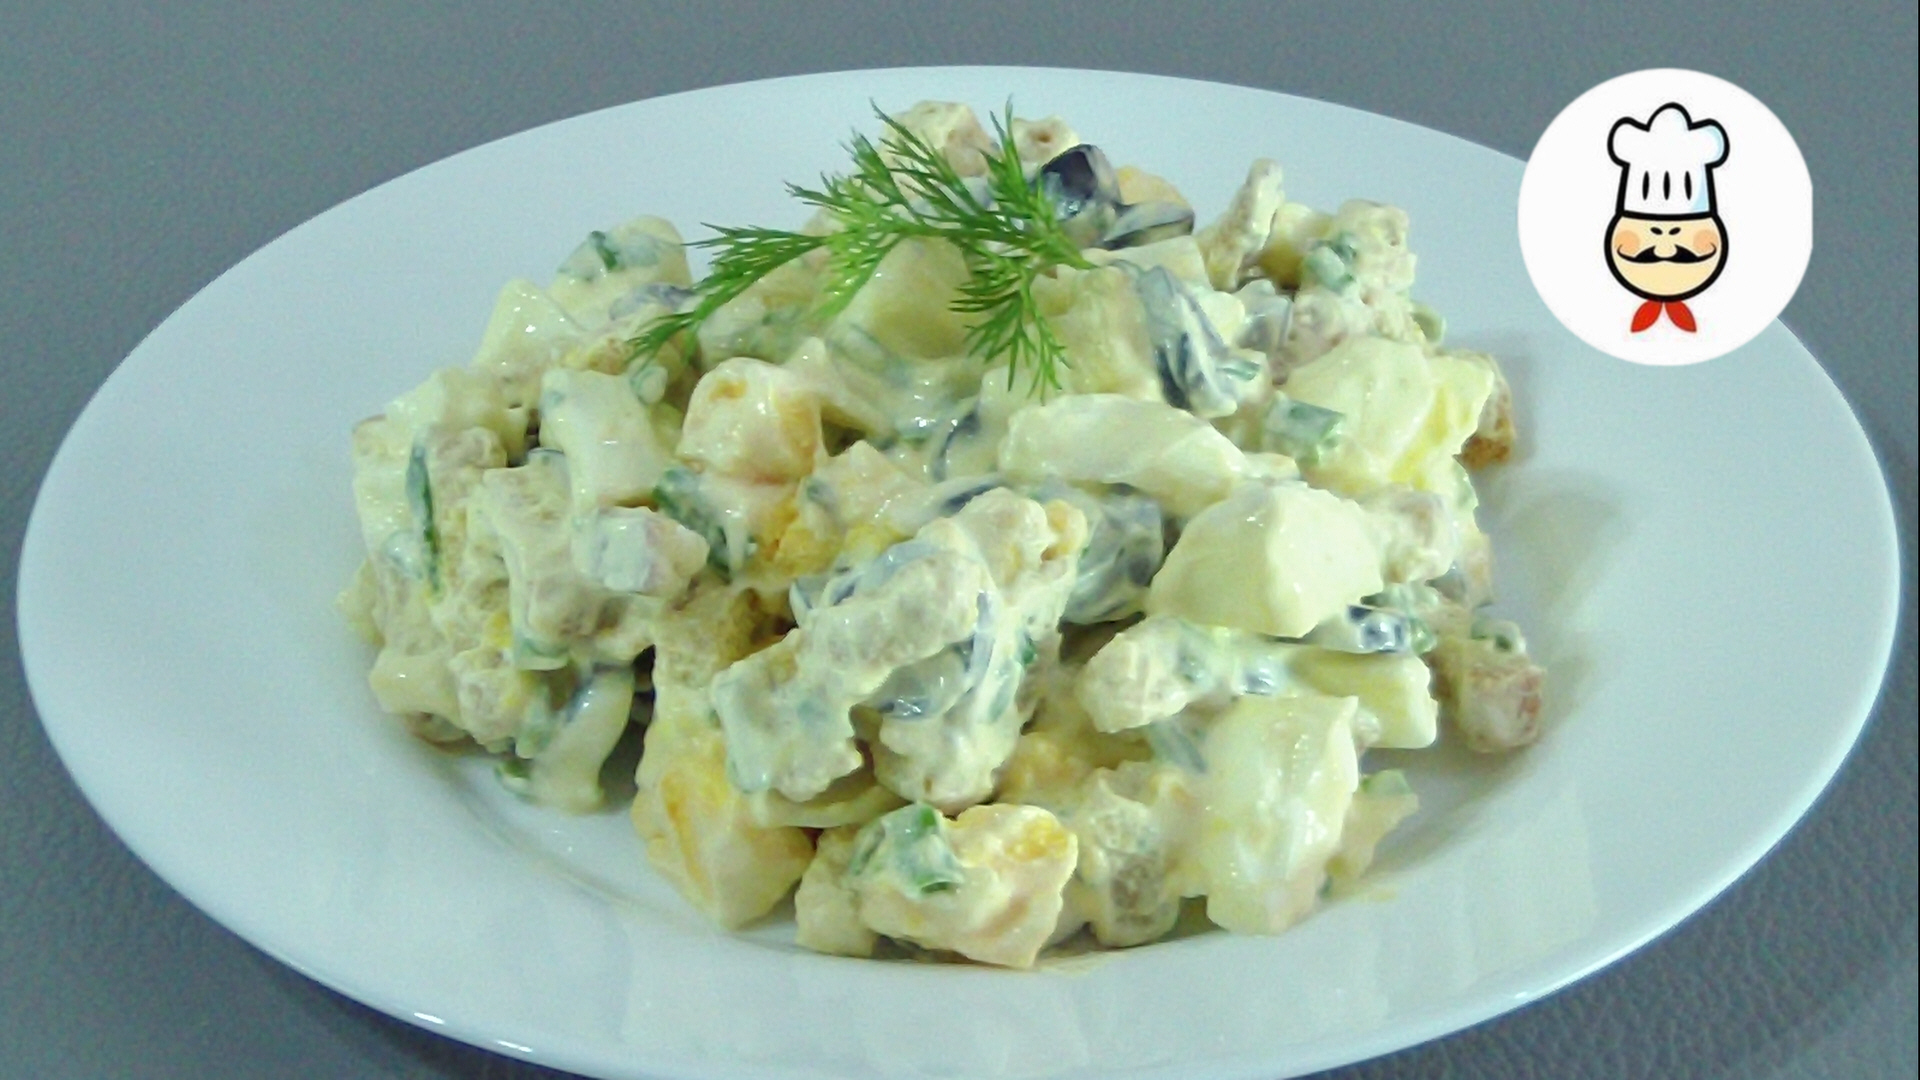 Фото к рецепту: Салат с зеленым луком и яйцом